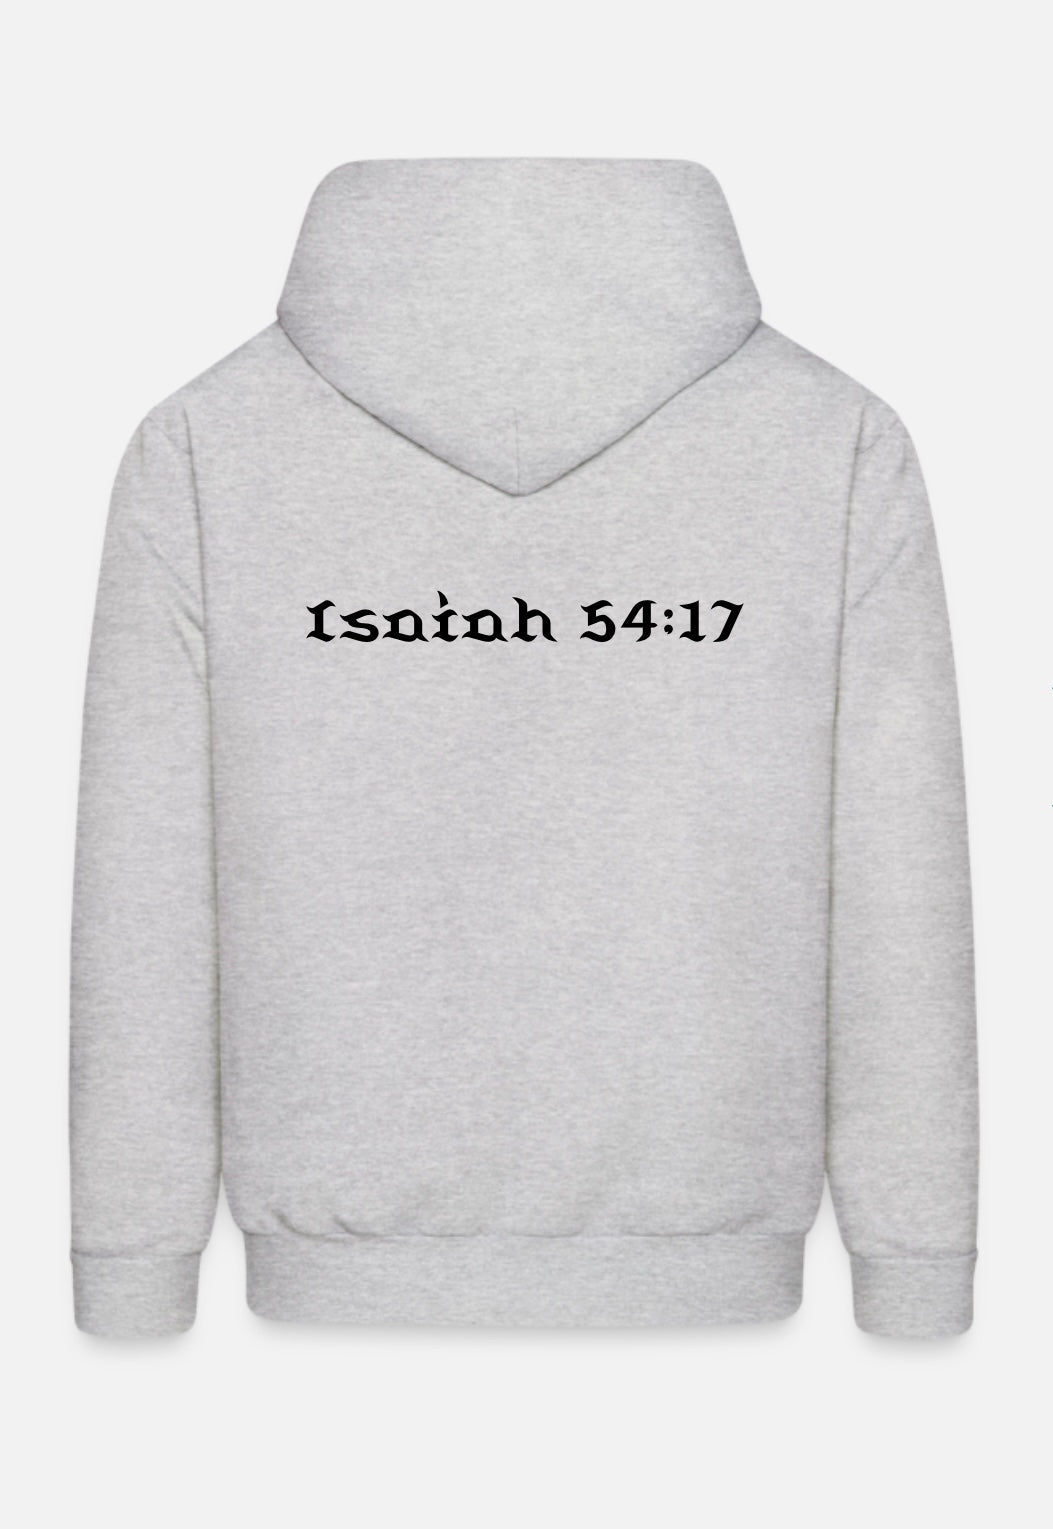 Isaiah 54:17 hoodie